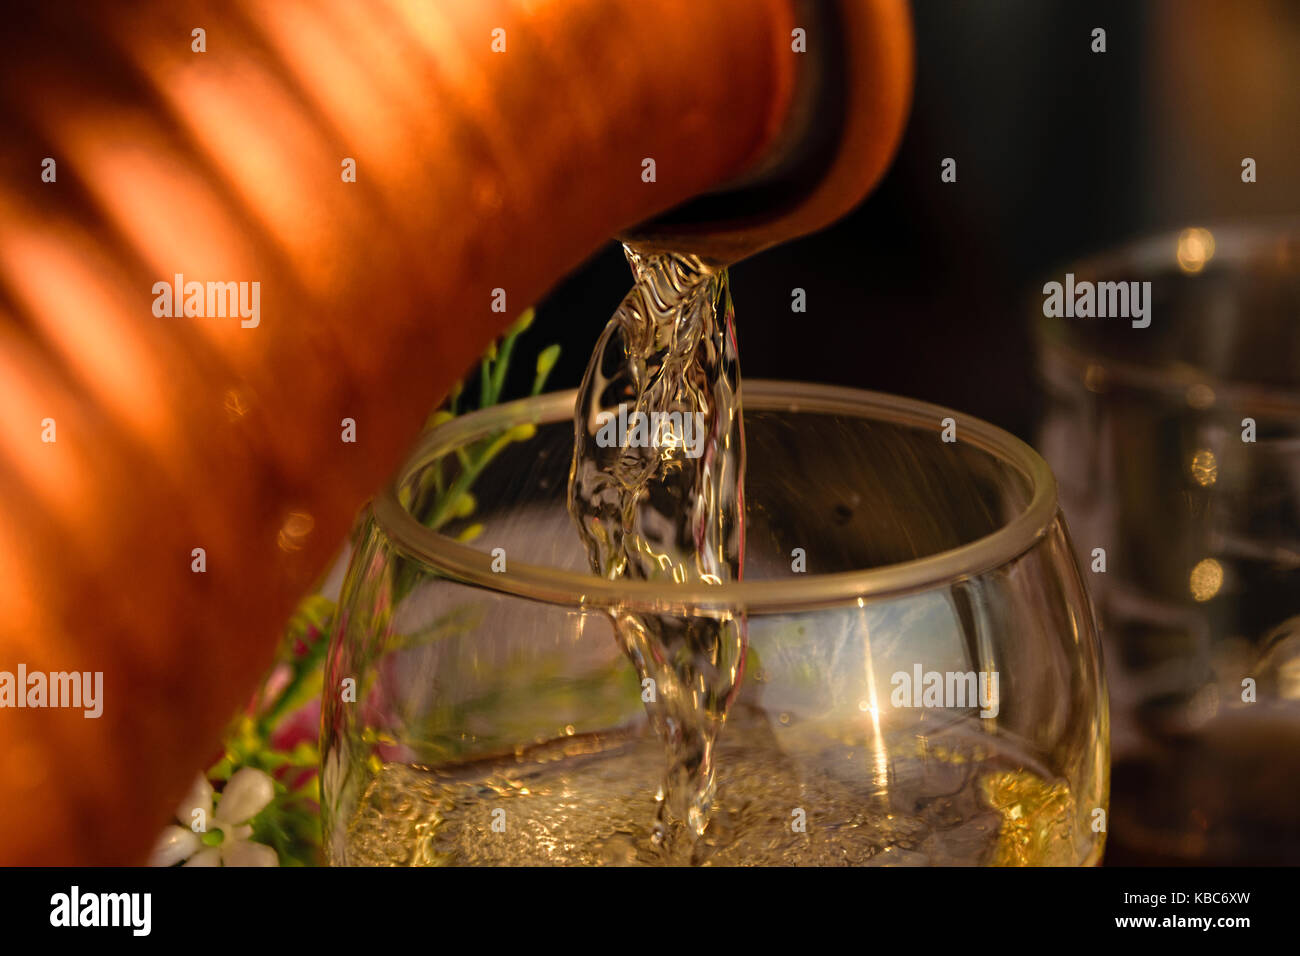 Close-up de vino blanco que se vierte en copas de vino durante el atardecer Foto de stock